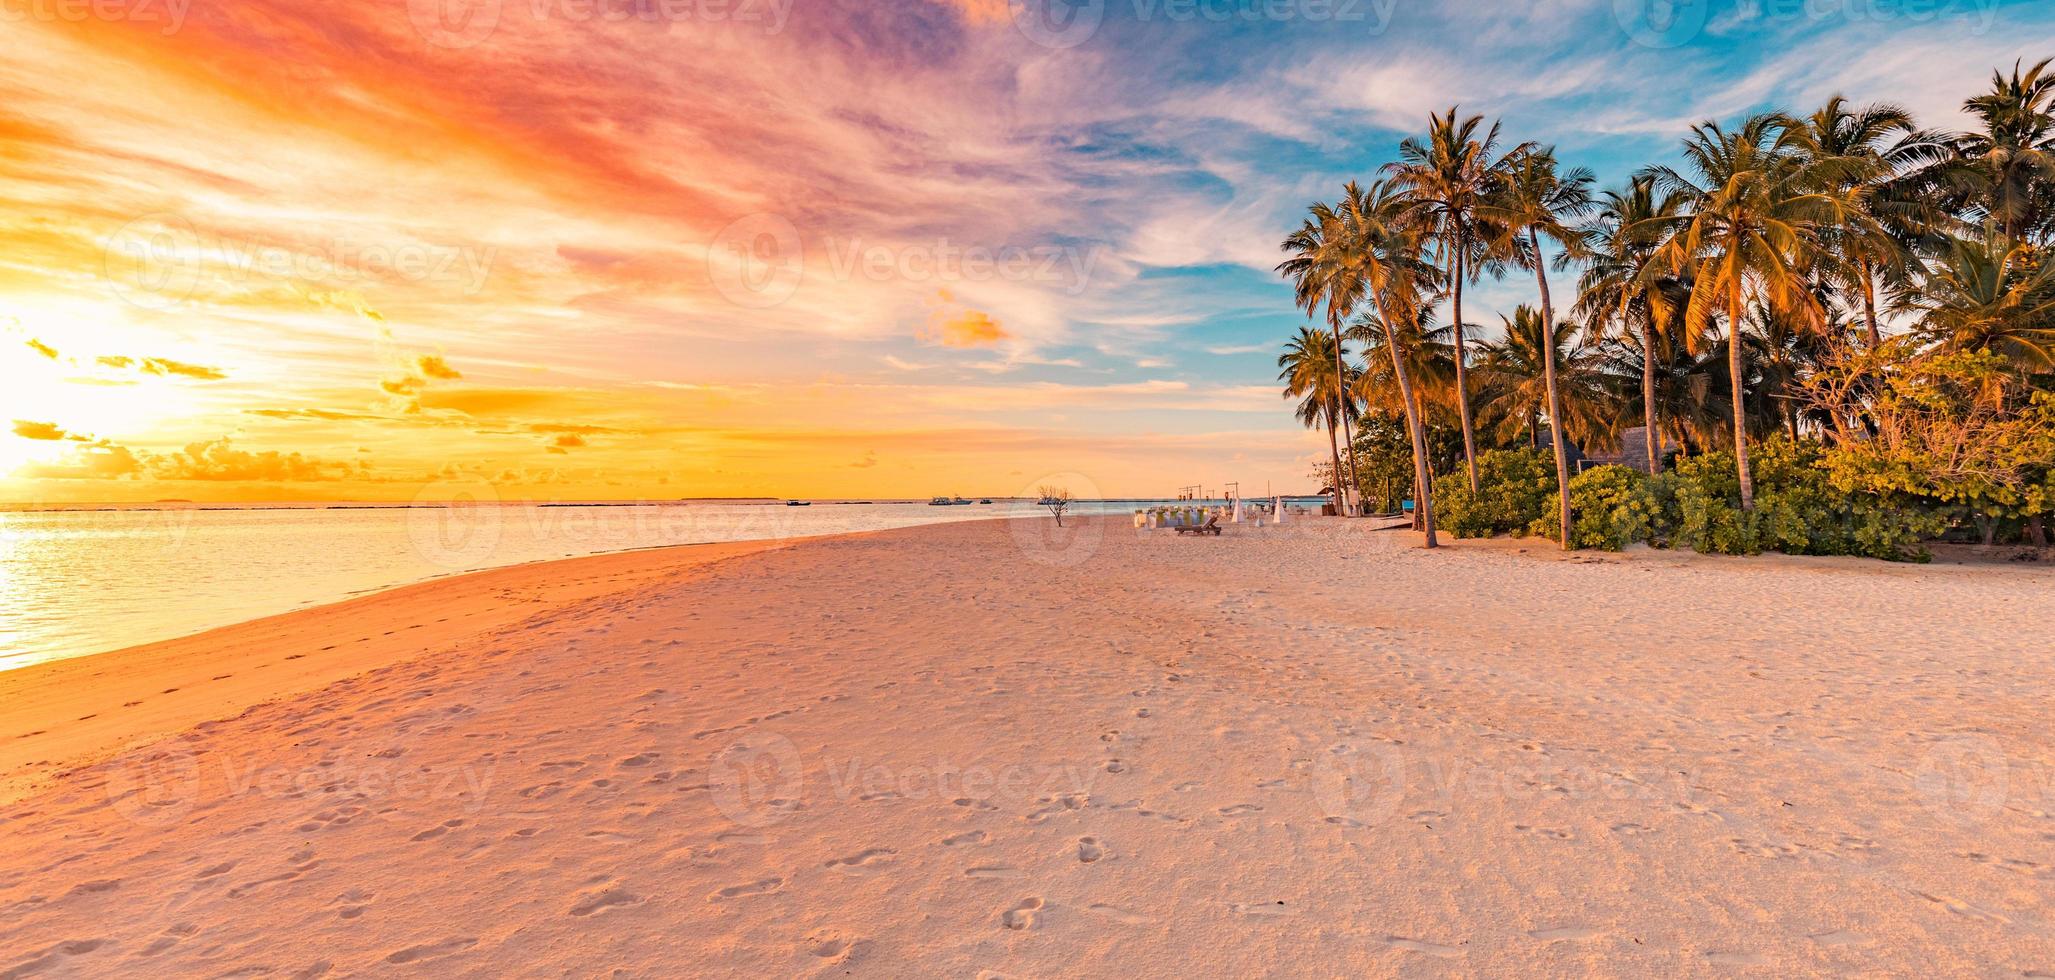 tranquillo paesaggio per le vacanze estive. spiaggia al tramonto dell'isola tropicale. palme riva mare calmo sabbia. natura esotica riflessione scenica, ispiratrice e pacifica del paesaggio marino, tramonto incredibile del cielo foto